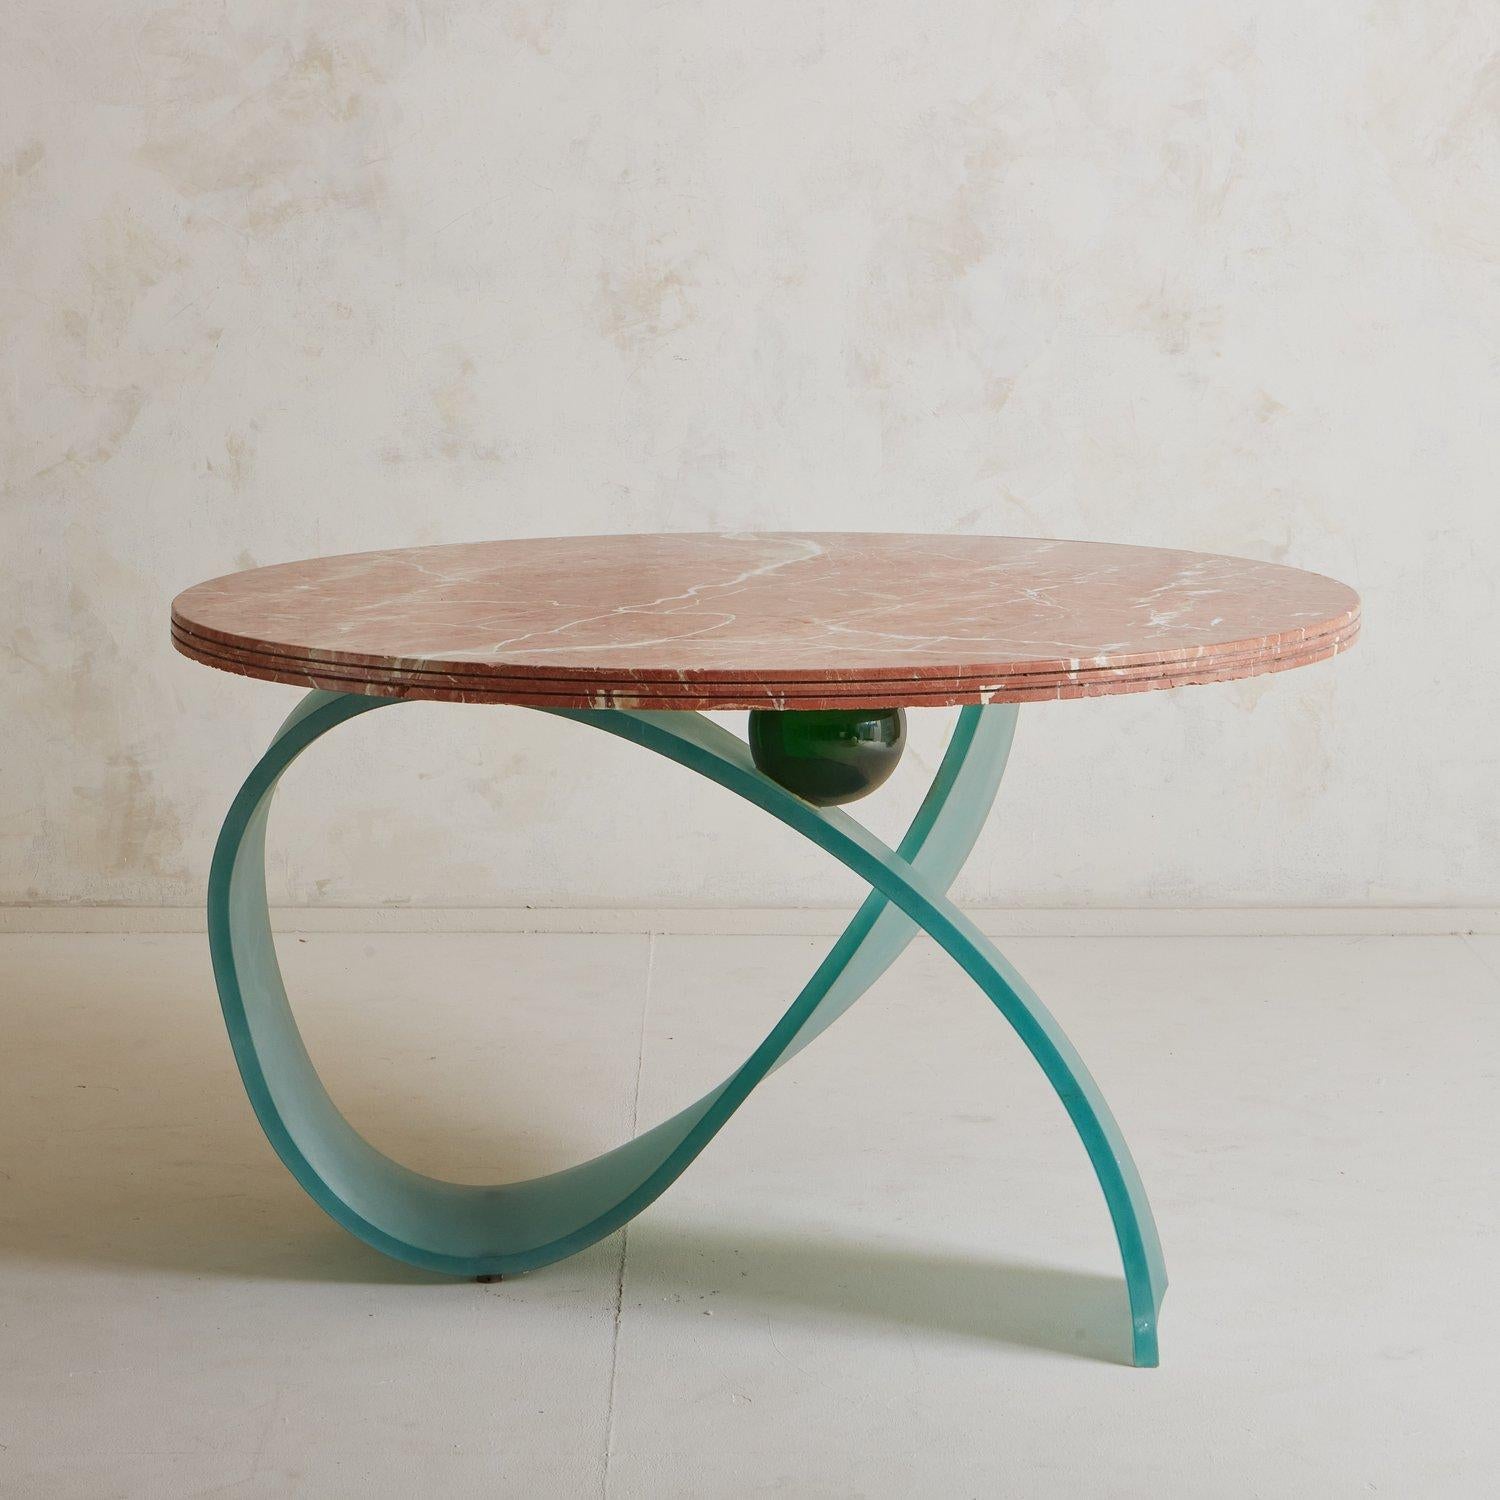 Ein Esstisch im Vintage-Stil mit einer runden Tischplatte aus drei geschichteten Blöcken aus spanischem Rojo Coralito-Marmor mit wunderschöner cremefarbener und grauer Maserung. Dieser einzigartige Tisch hat einen skulpturalen Sockel aus blauem